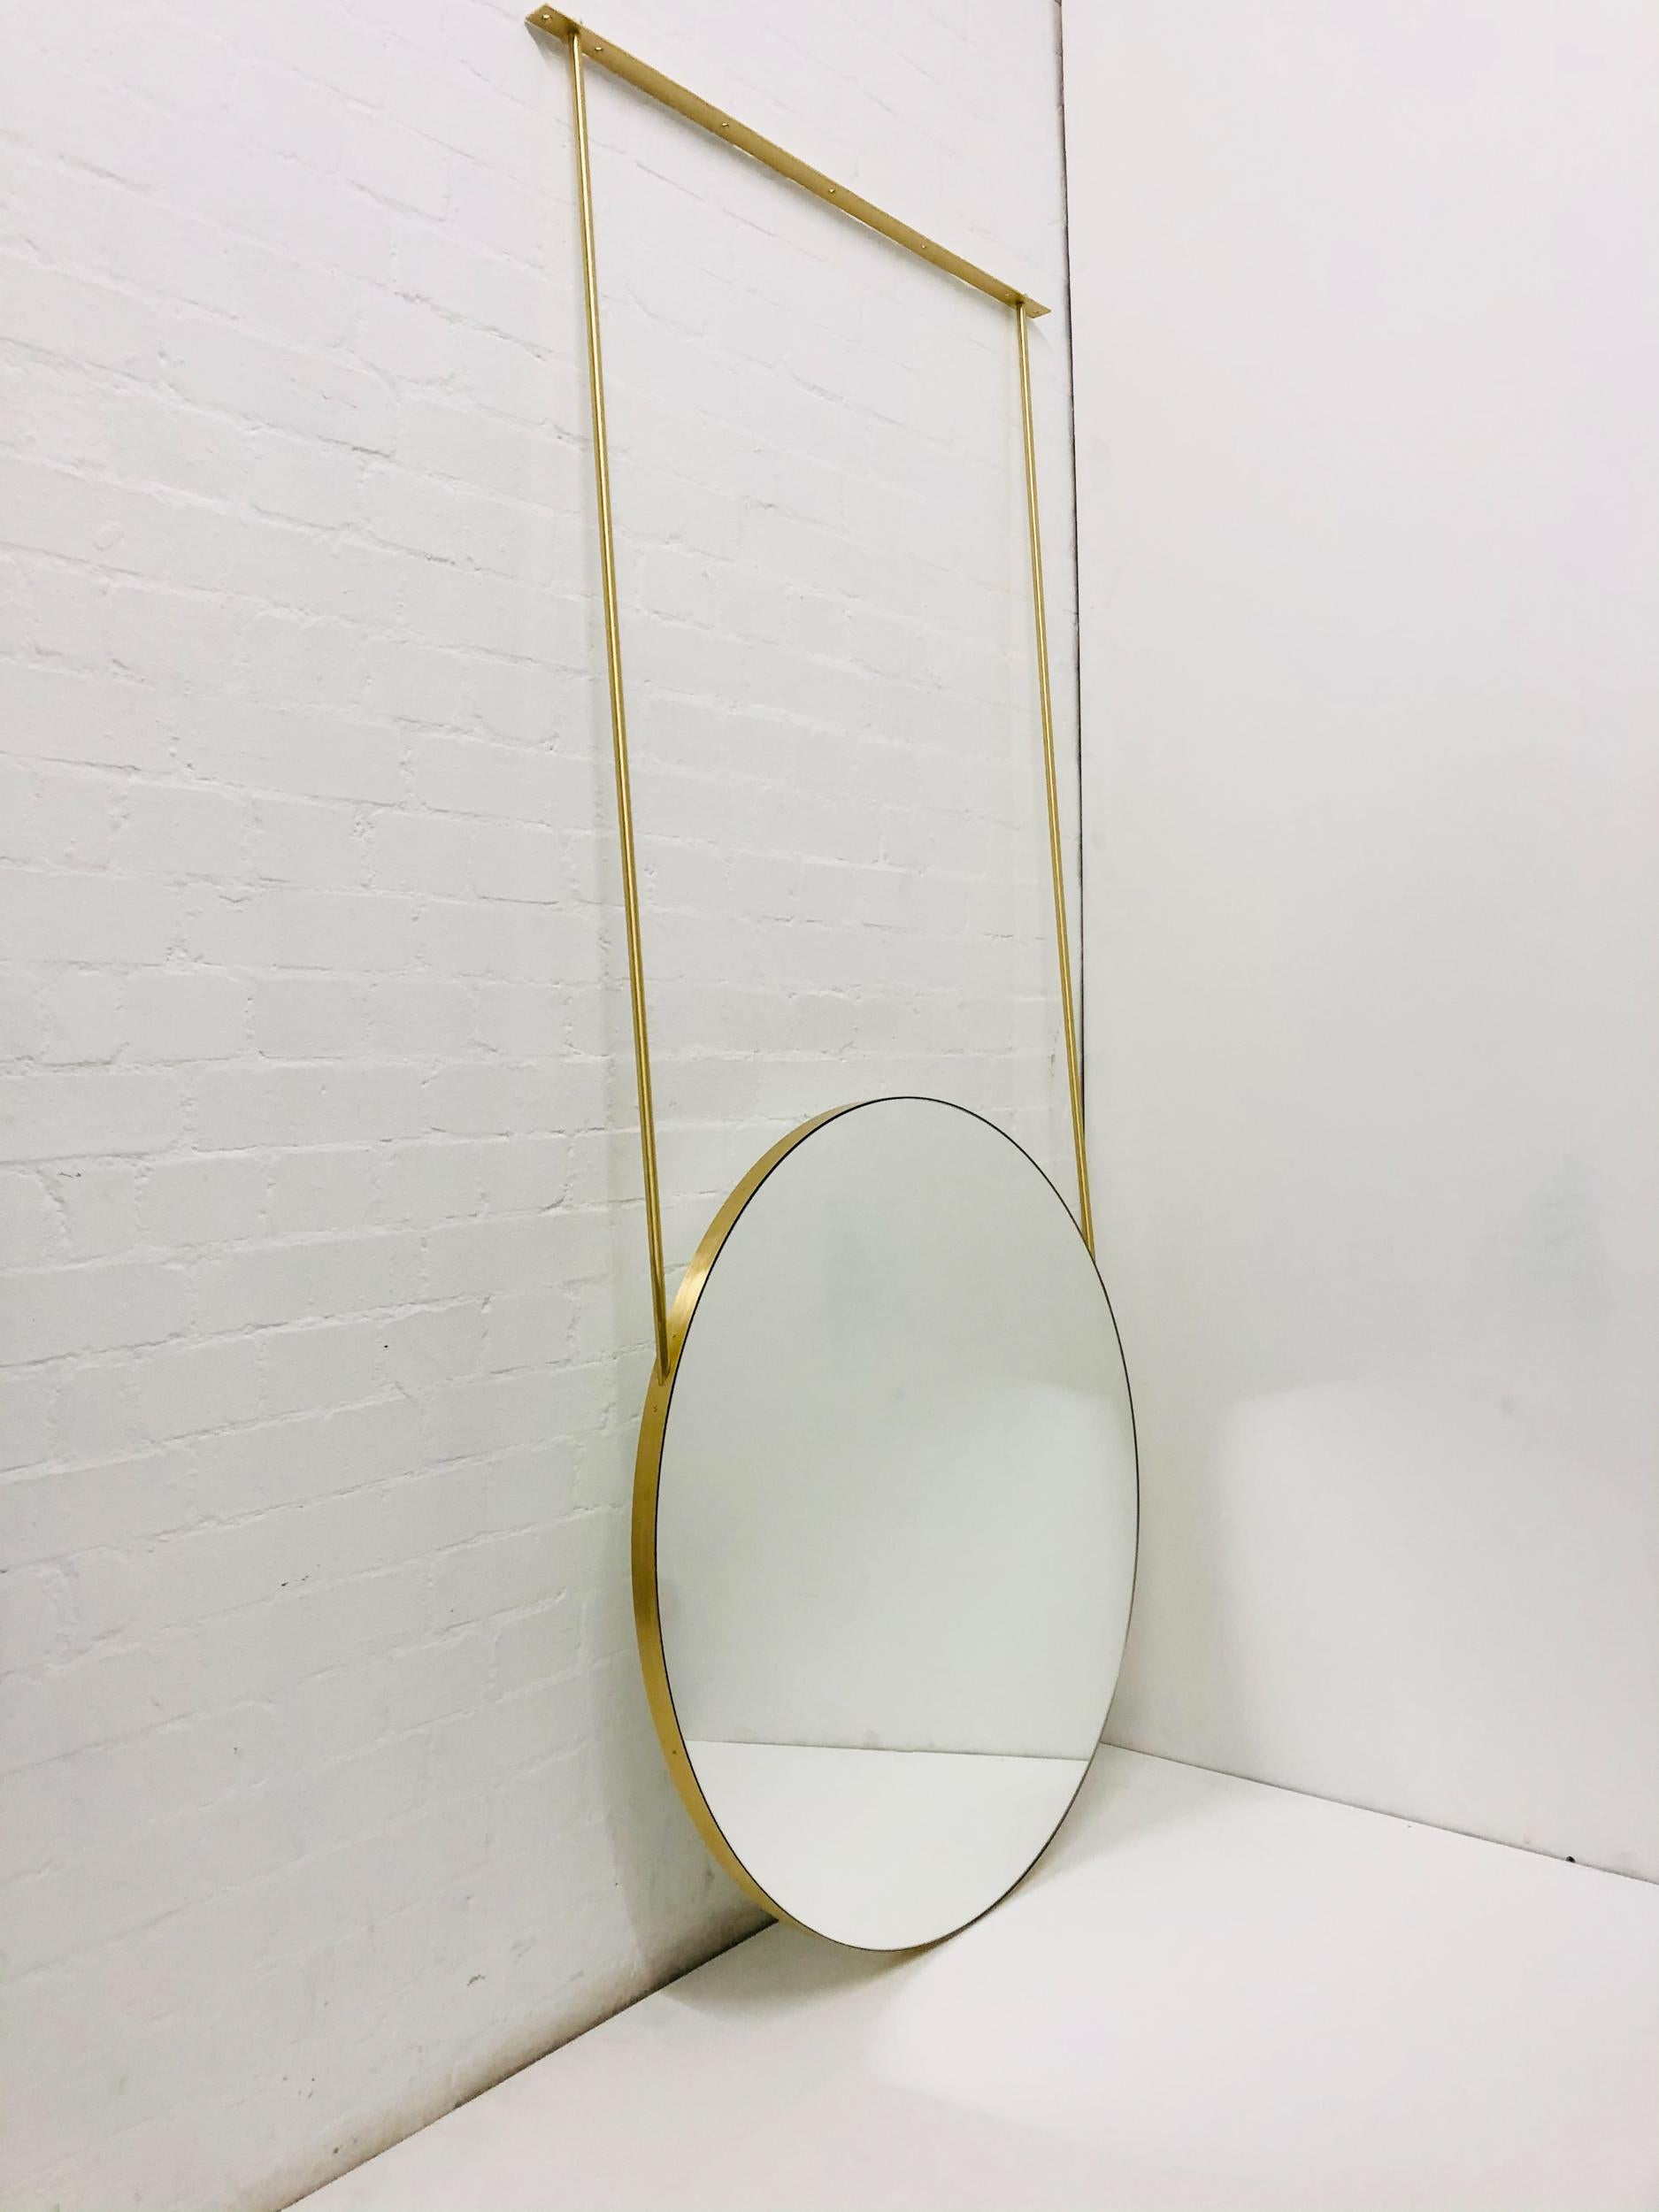 Exquisiter, moderner, an der Decke aufgehängter, doppelseitiger runder Spiegel mit einem eleganten Rahmen aus gebürstetem Messing. 

Abmessungen des Spiegels: 914mm (36